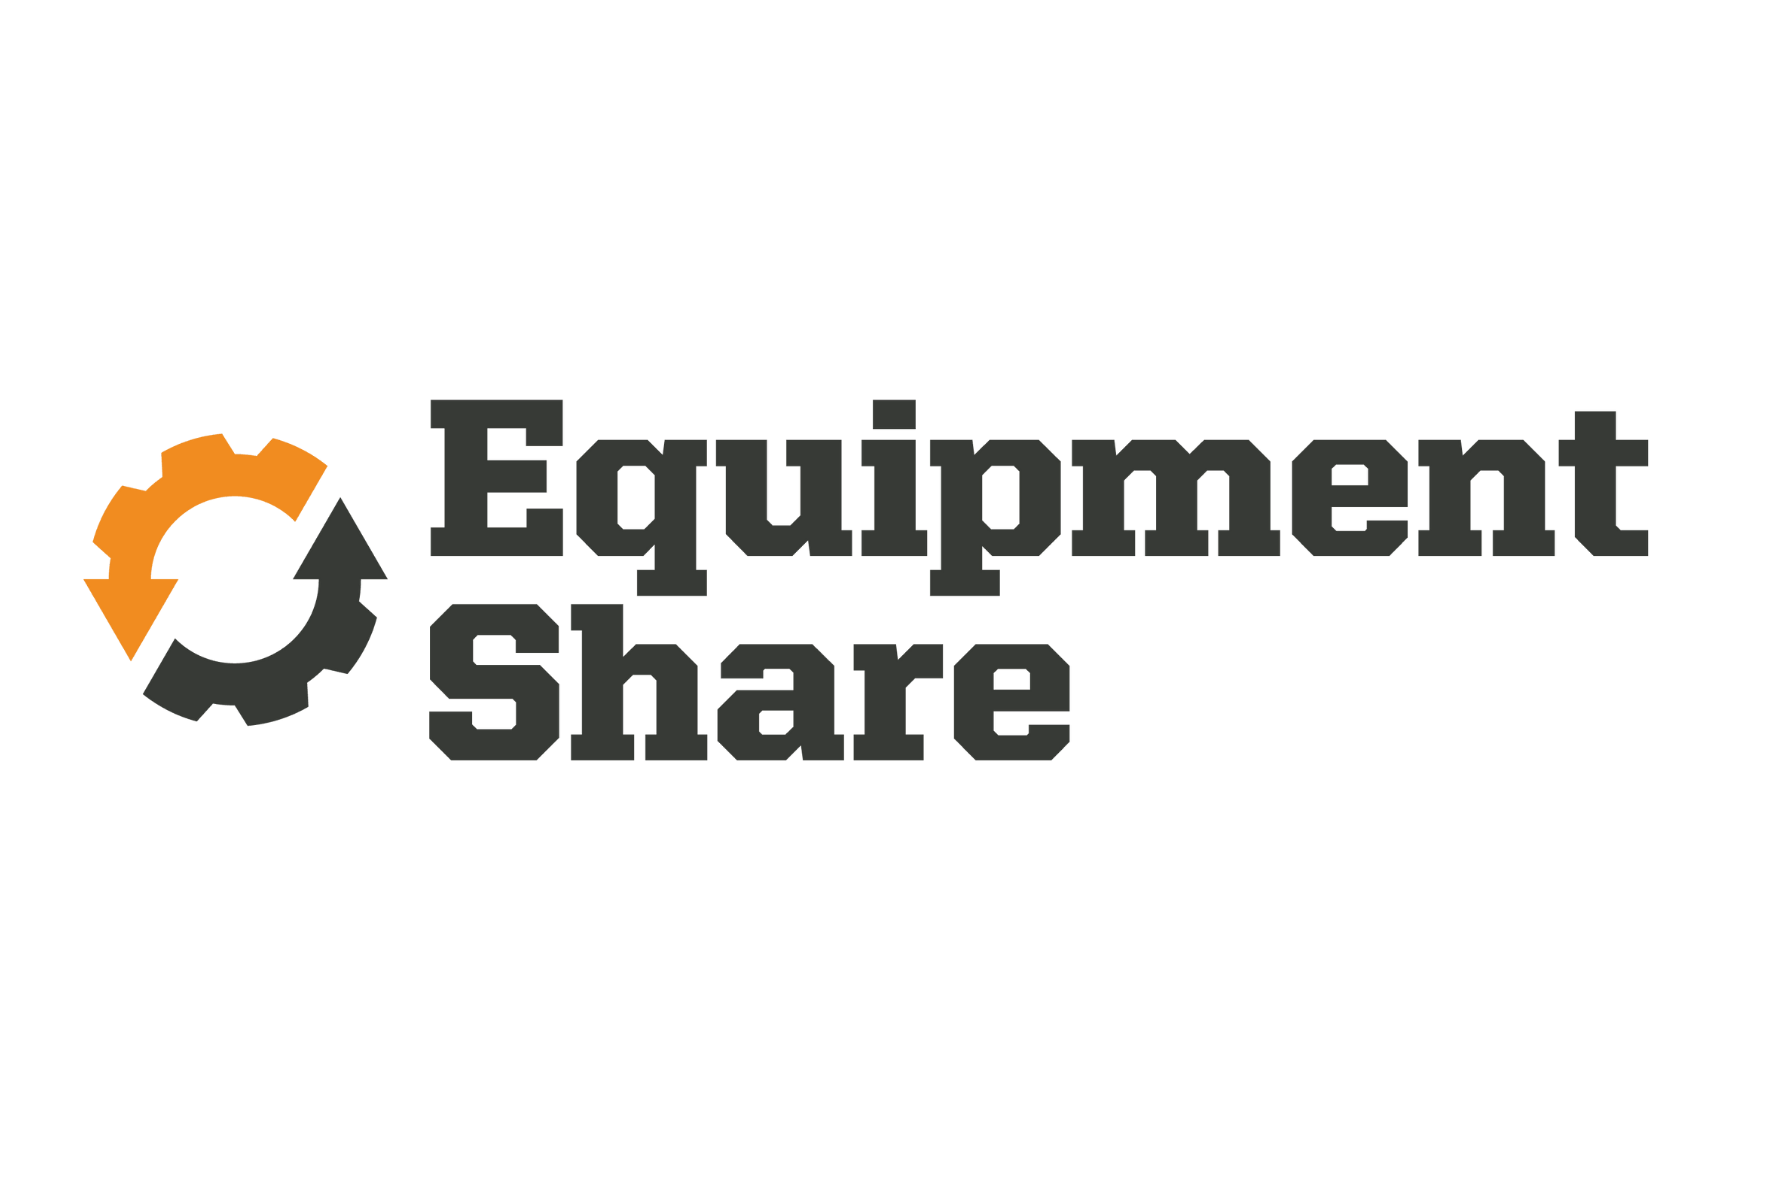 Equipment Share